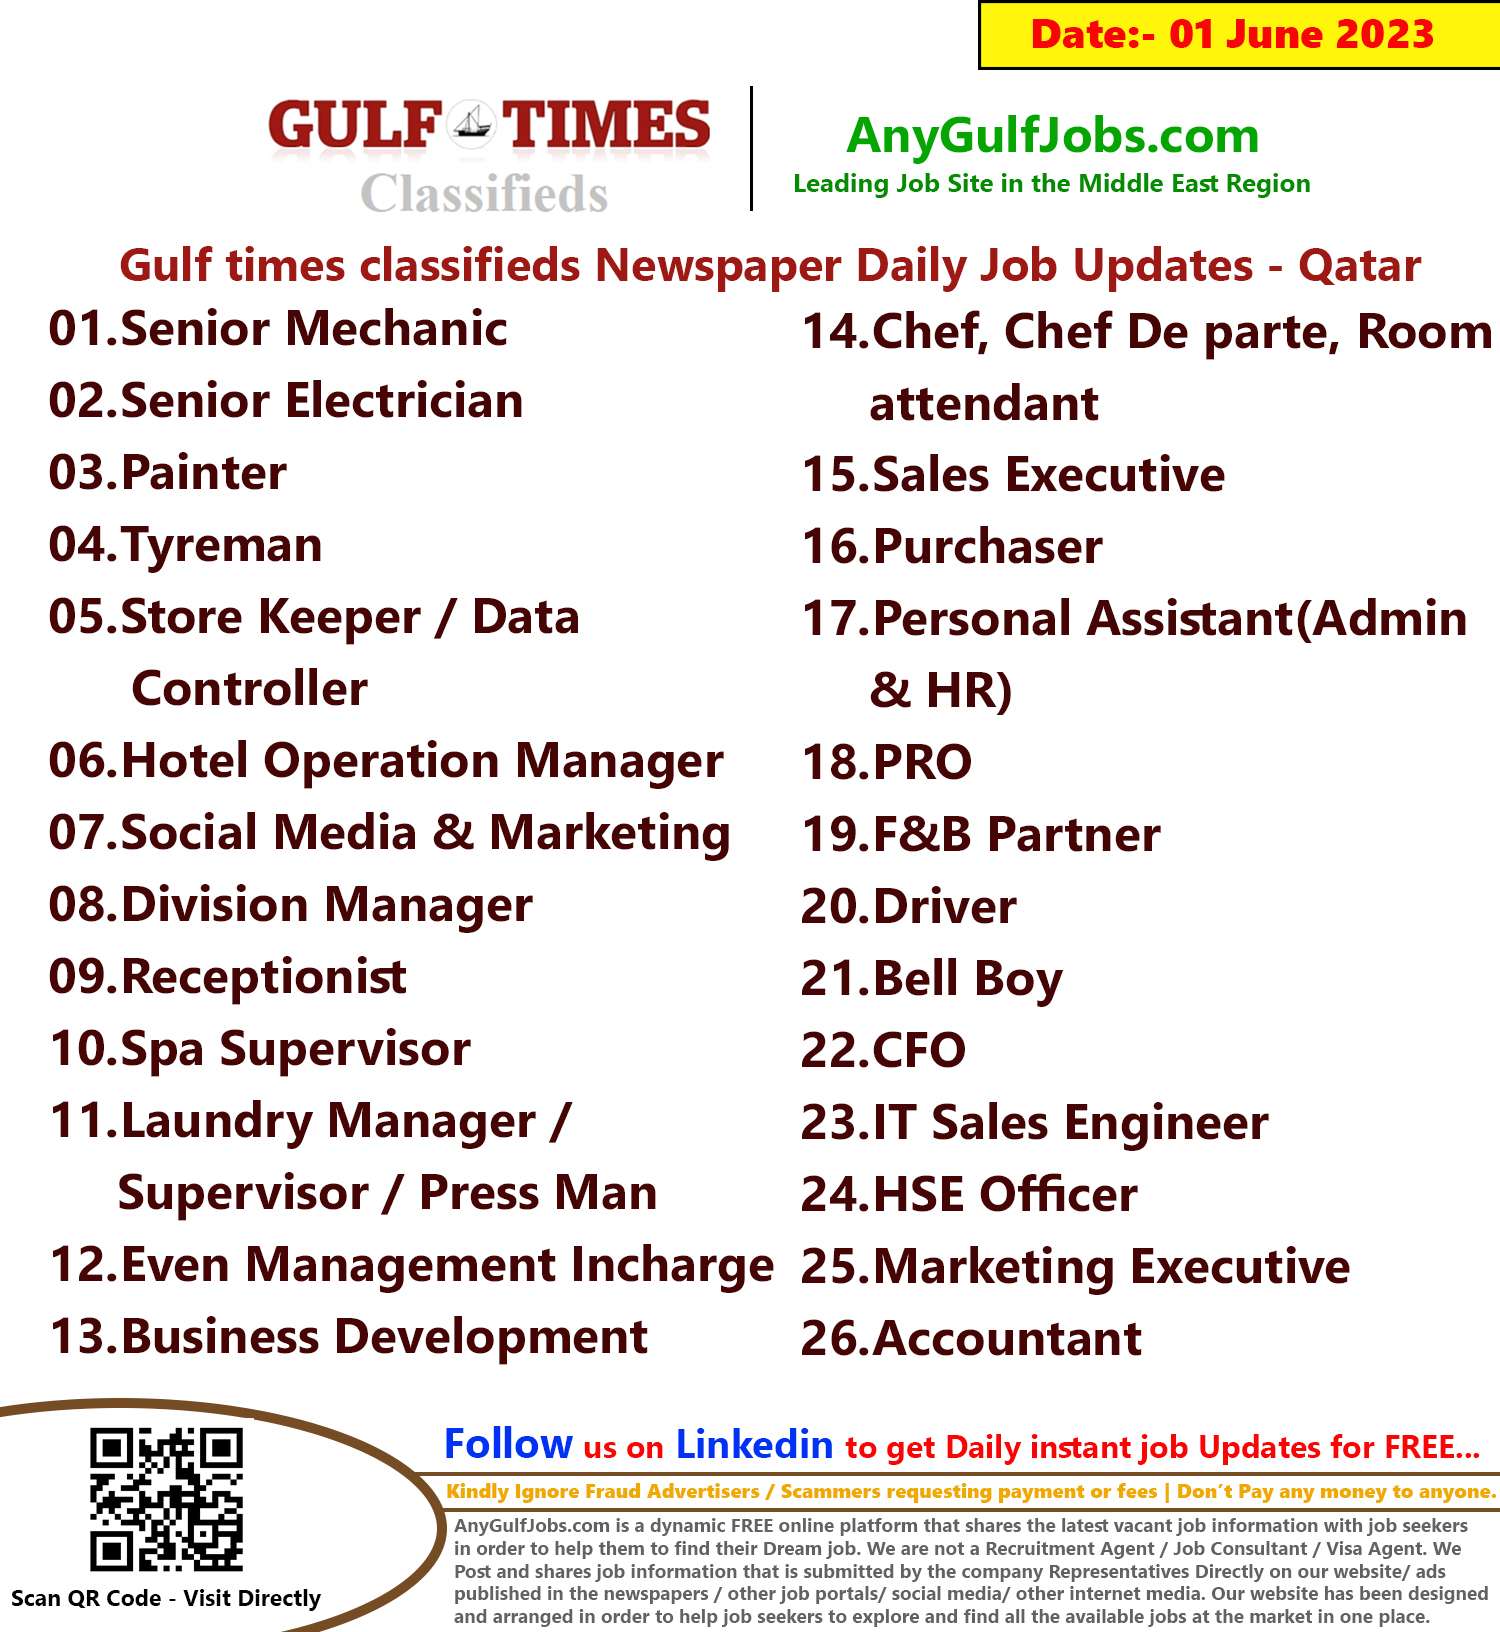 Gulf times classifieds Job Vacancies Qatar - 01 June 2023